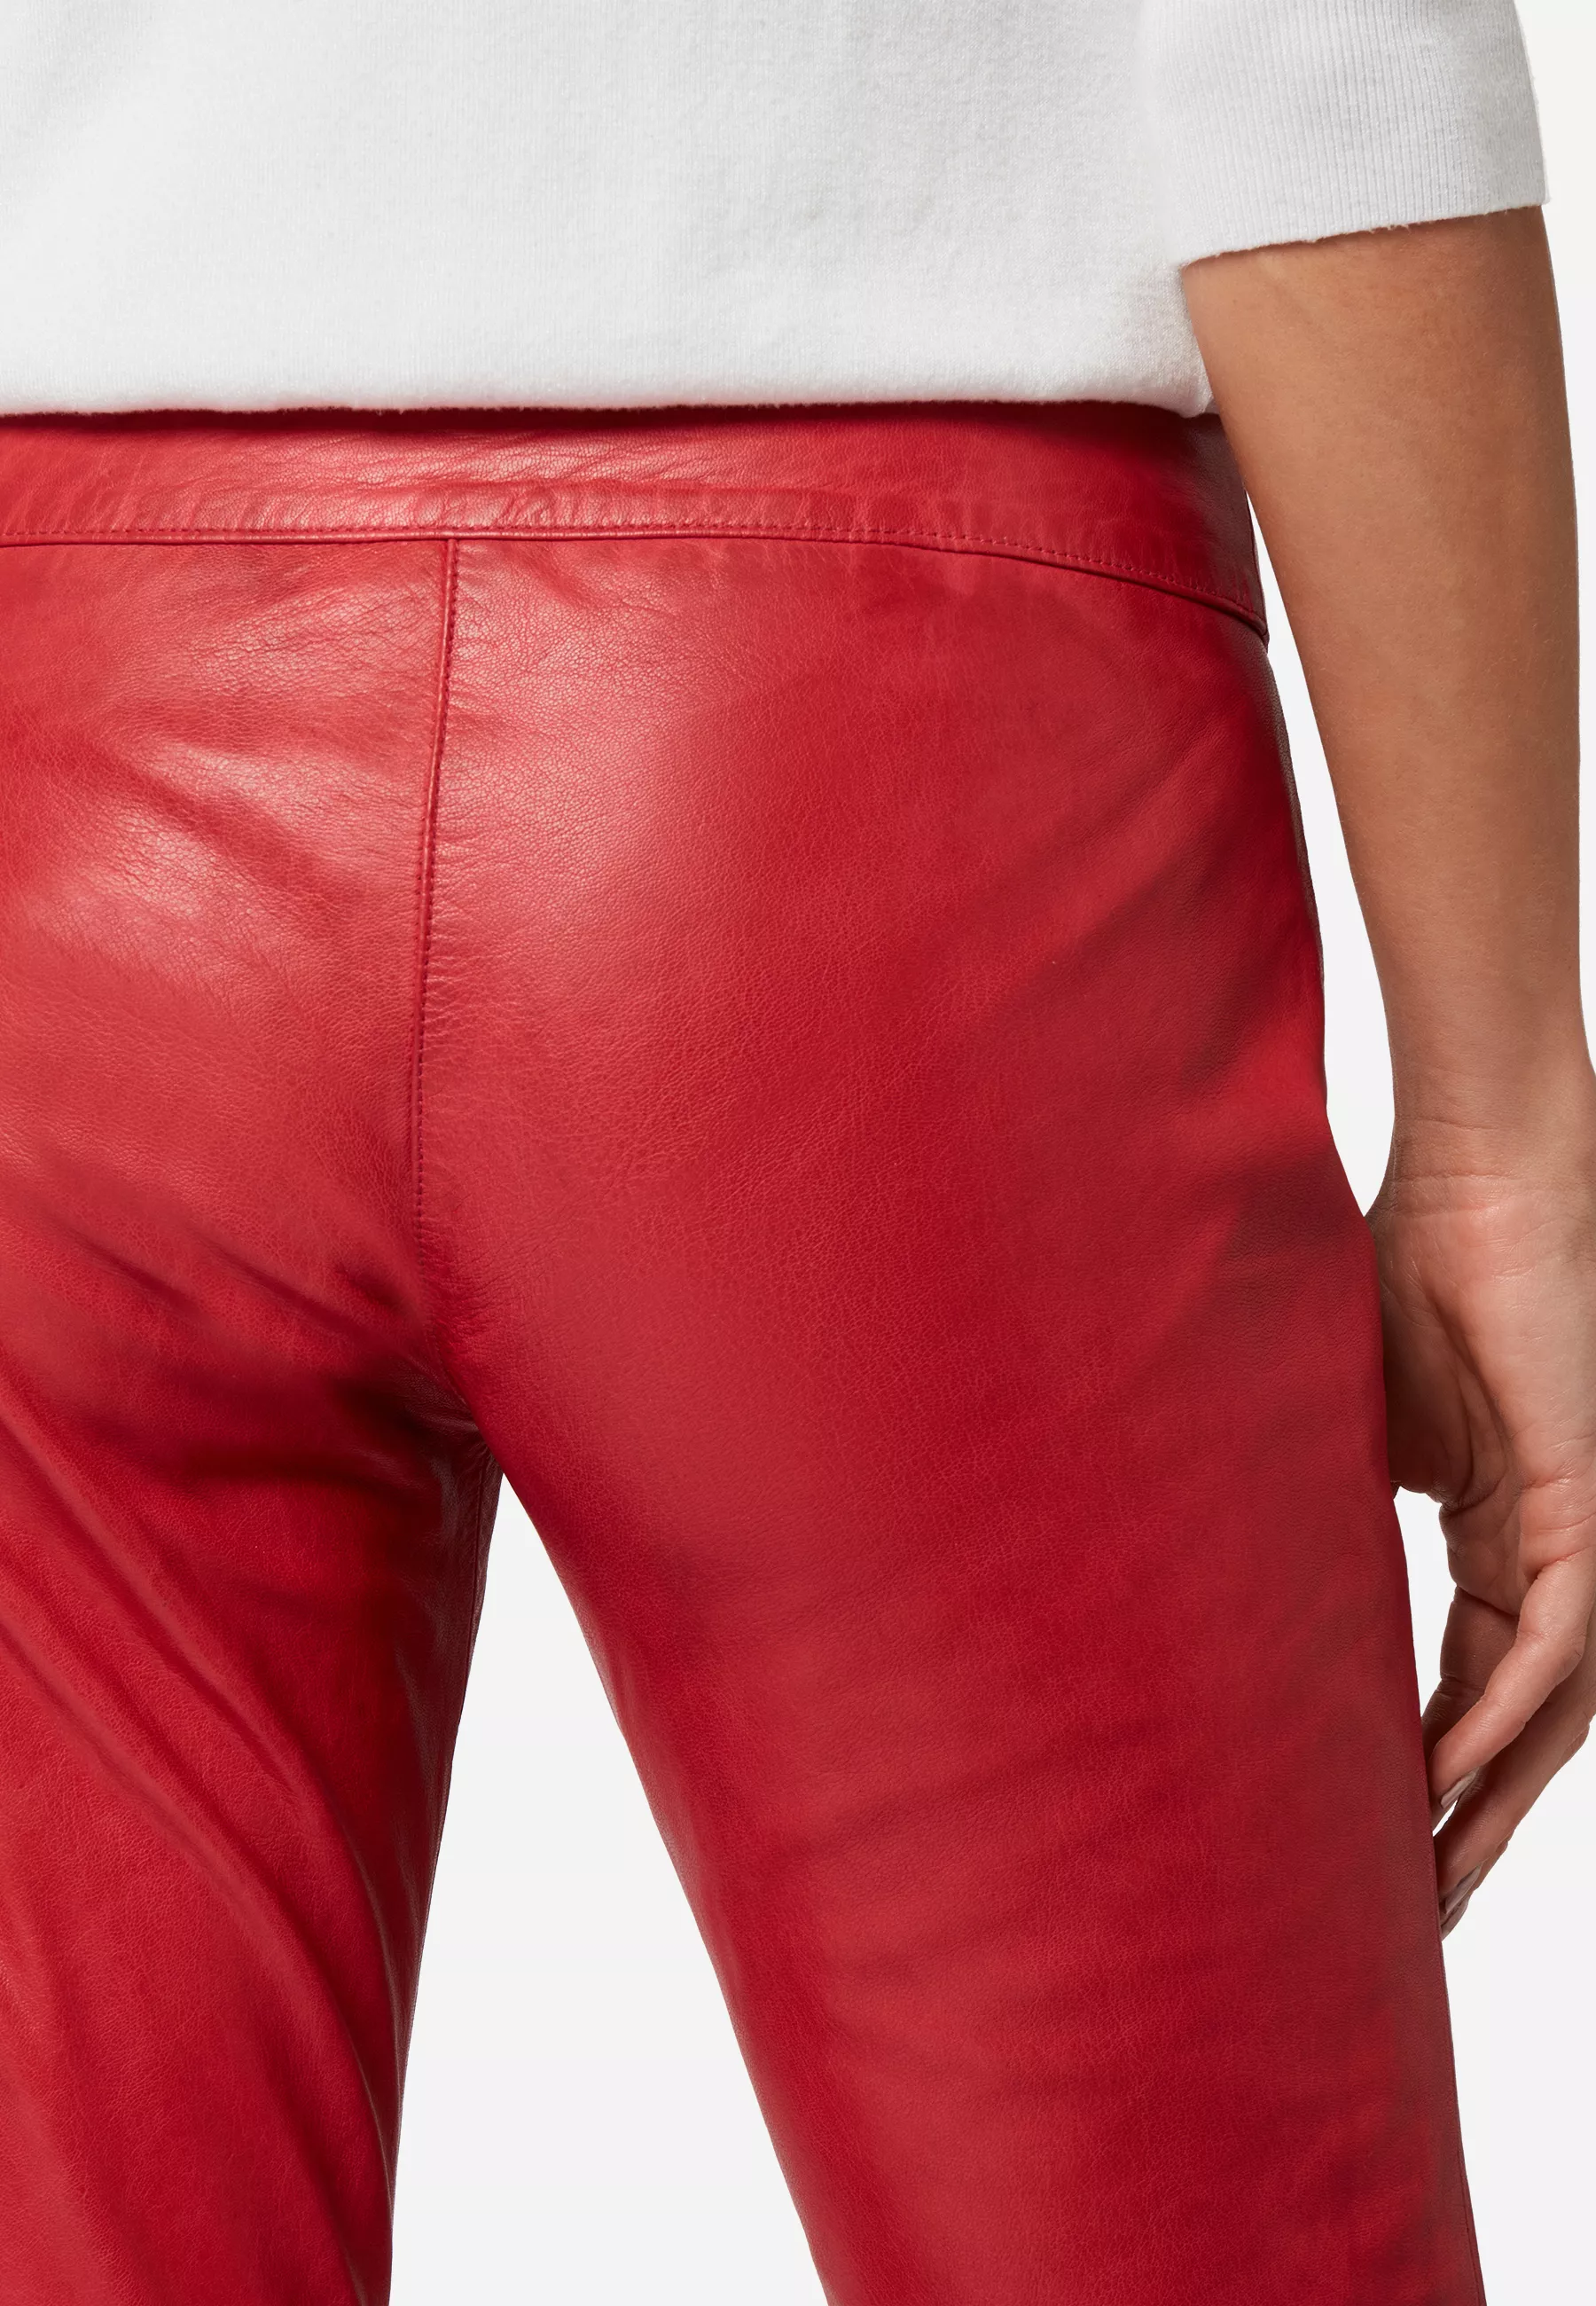 Damen Lederhose Low Cut in Rot von Ricano, Detailansicht Gesäß am Model